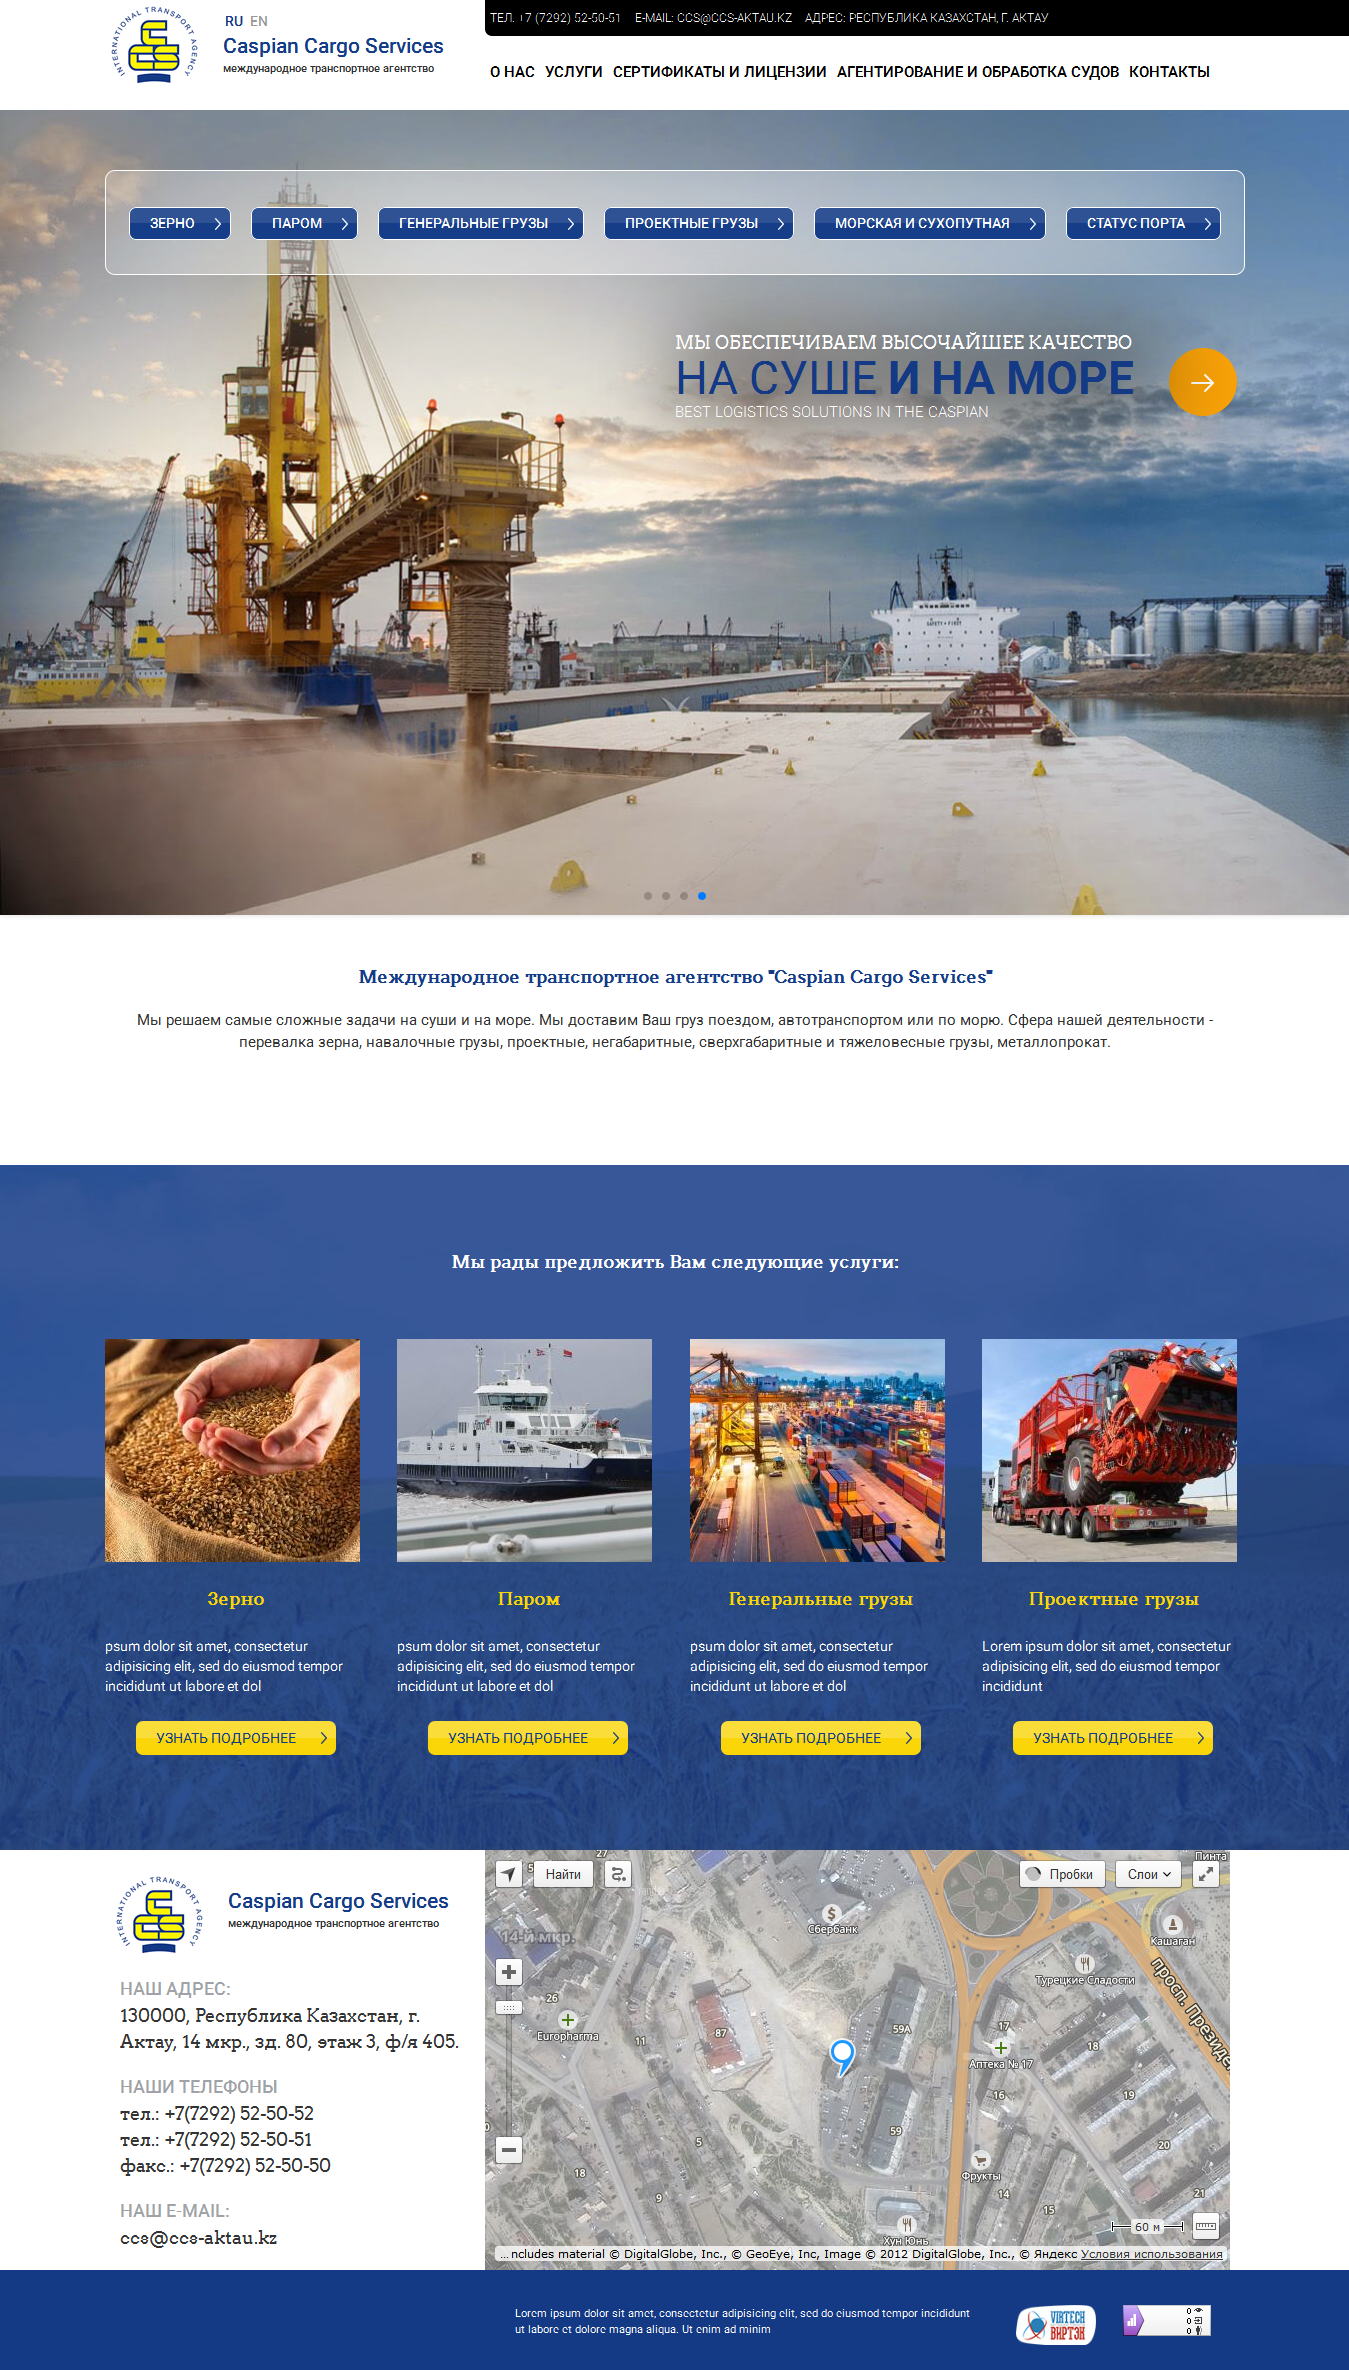 Создание сайта для Caspian Cargo Services (порт Актау) - http://ccs-aktau.kz/ru/